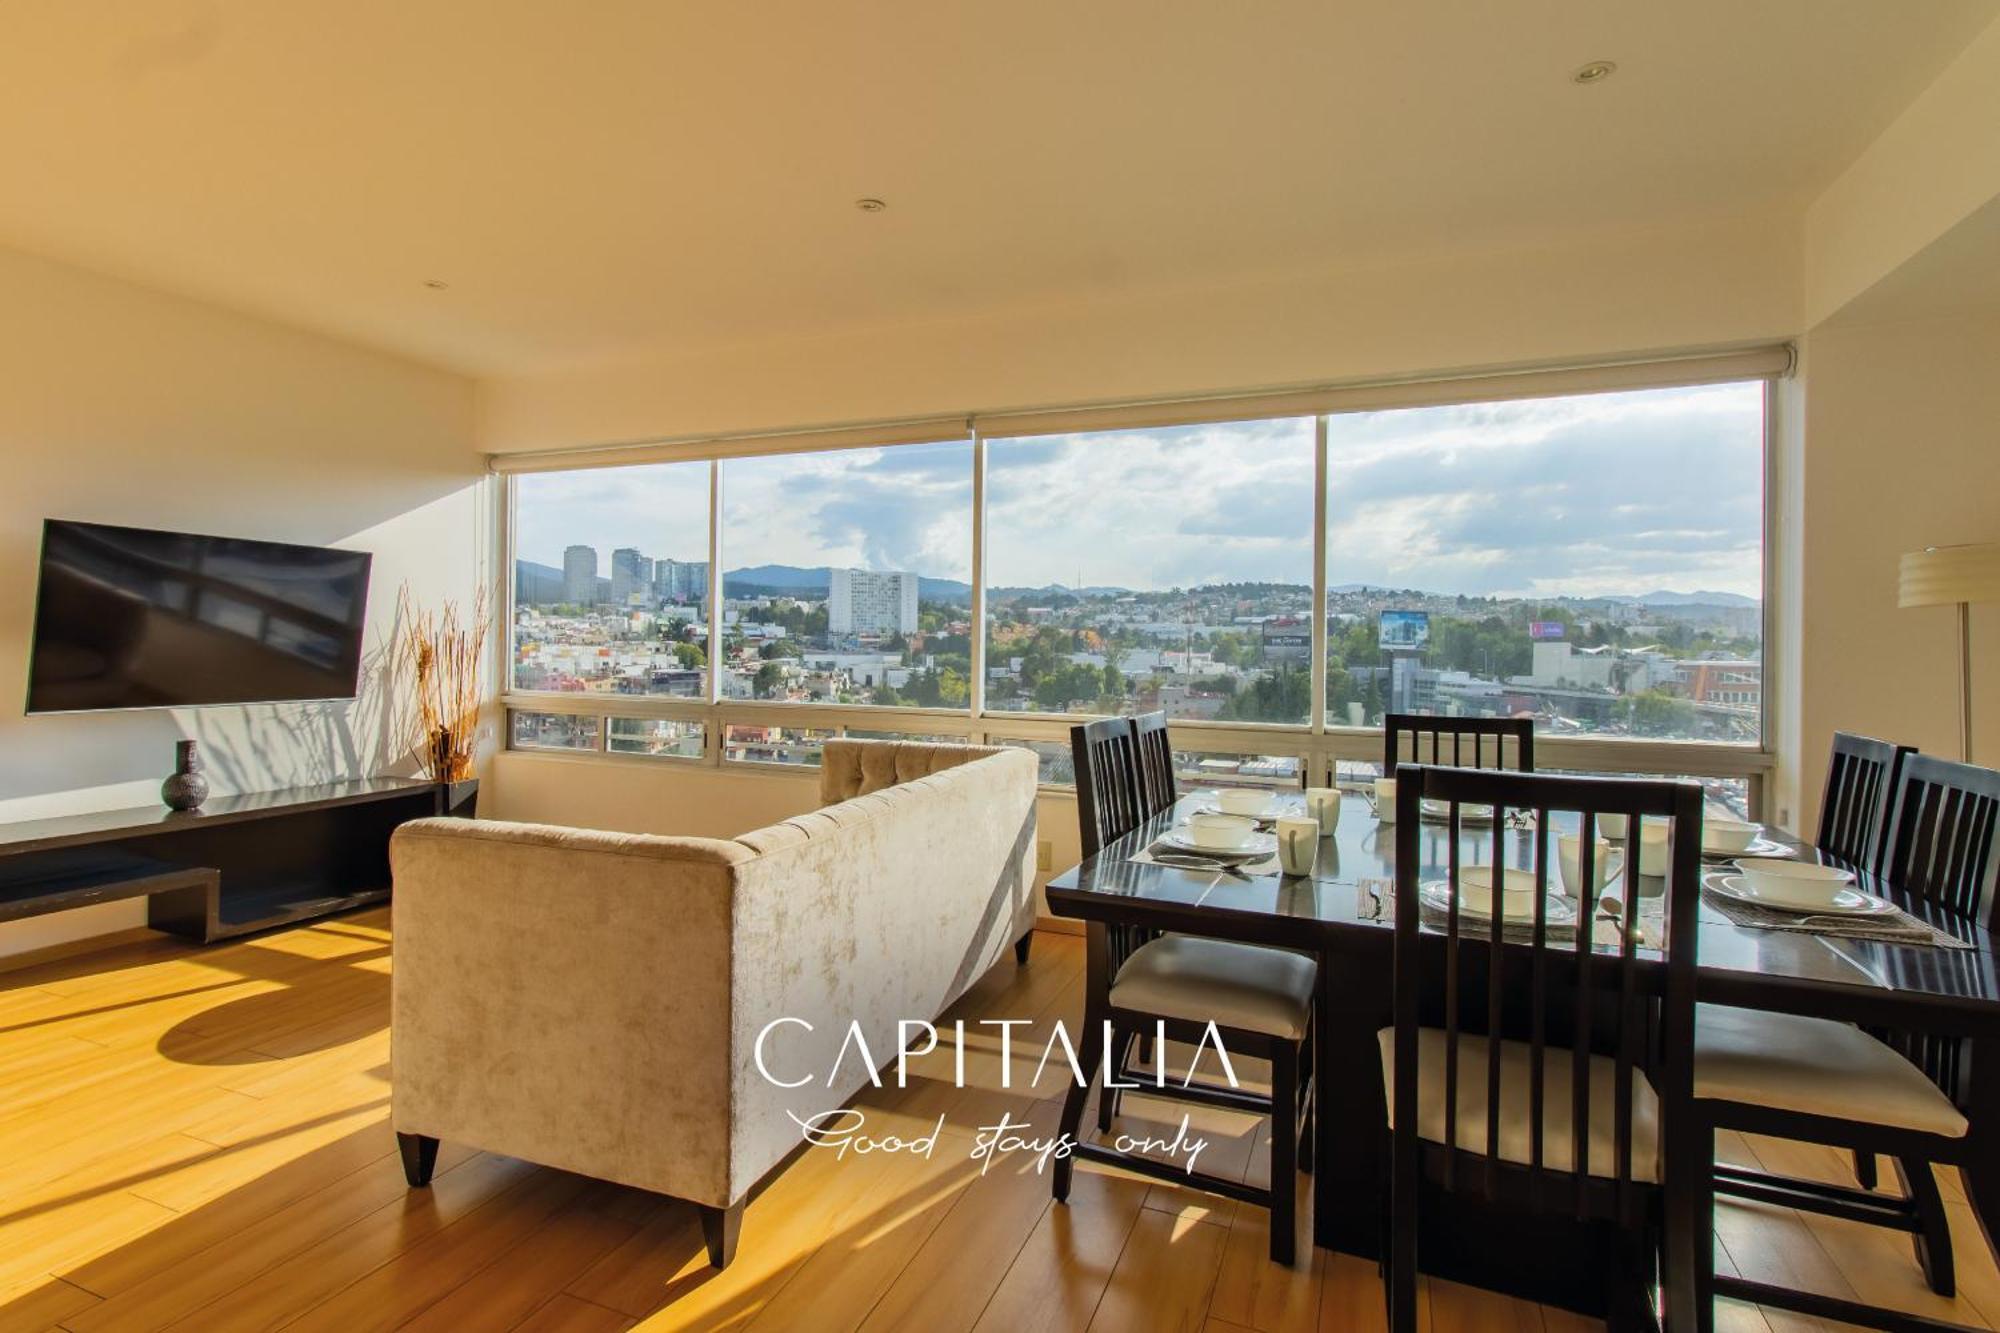 Capitalia - Apartments - Santa Fe Mexico by Rom bilde